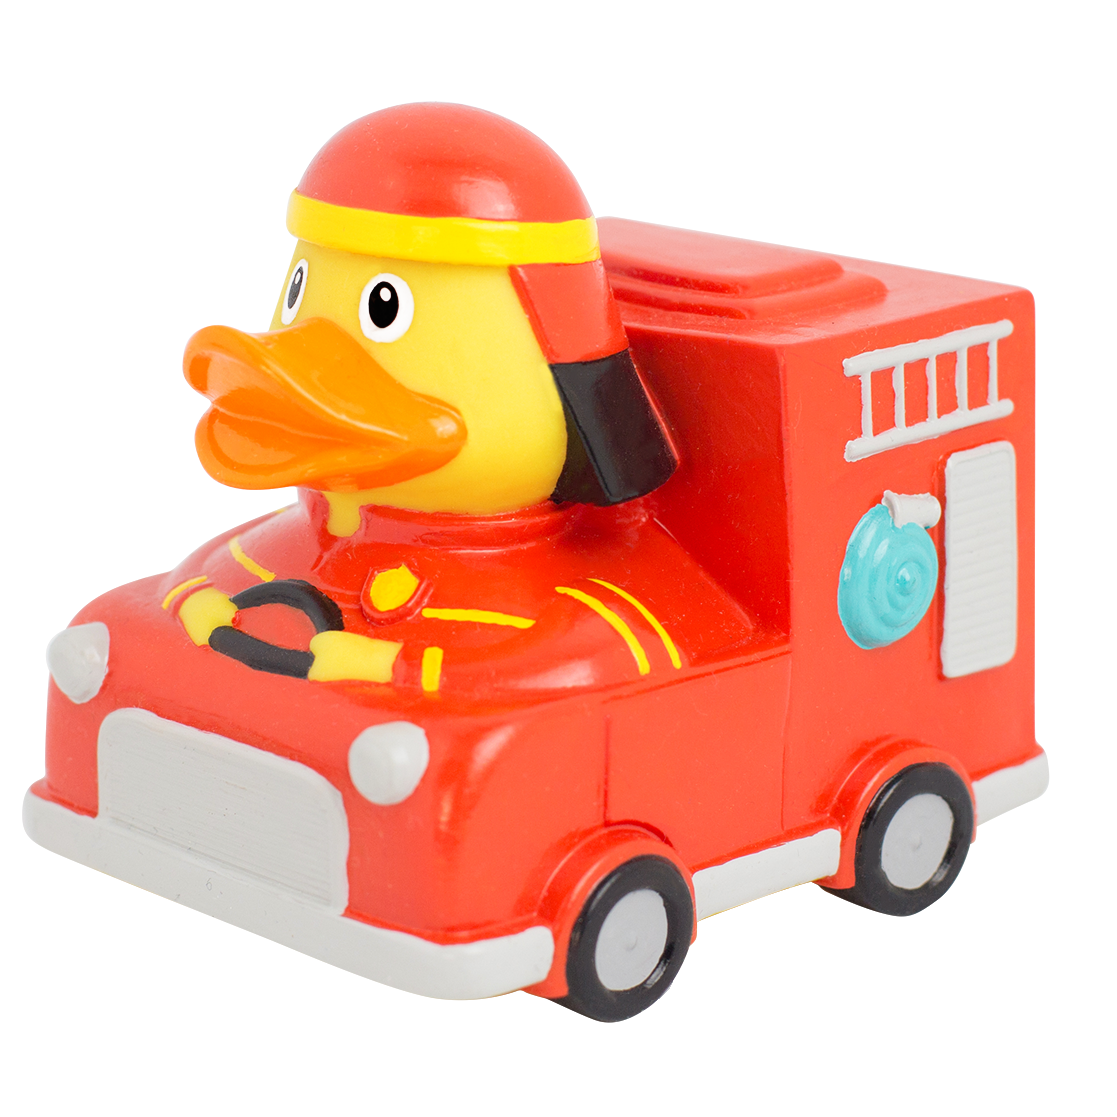 Duck Fire Truck.